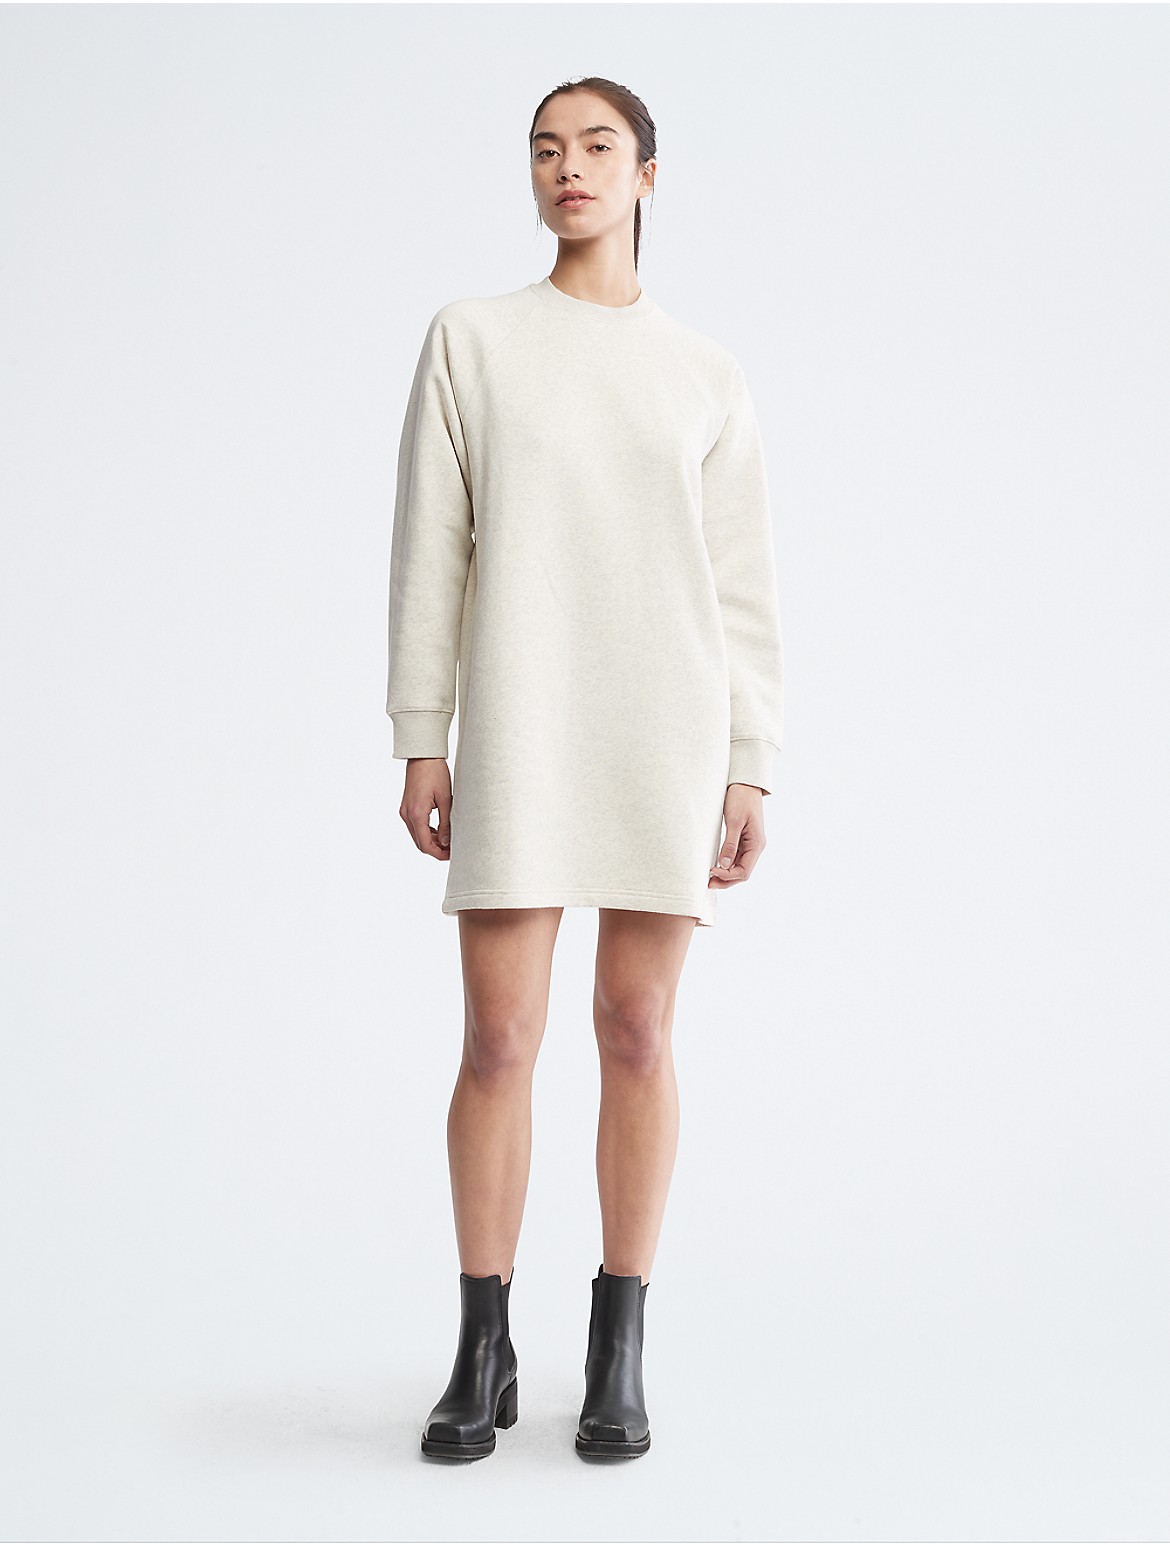 Calvin Klein Women's Archive Logo Fleece Sweatshirt Dress - Neutral - L